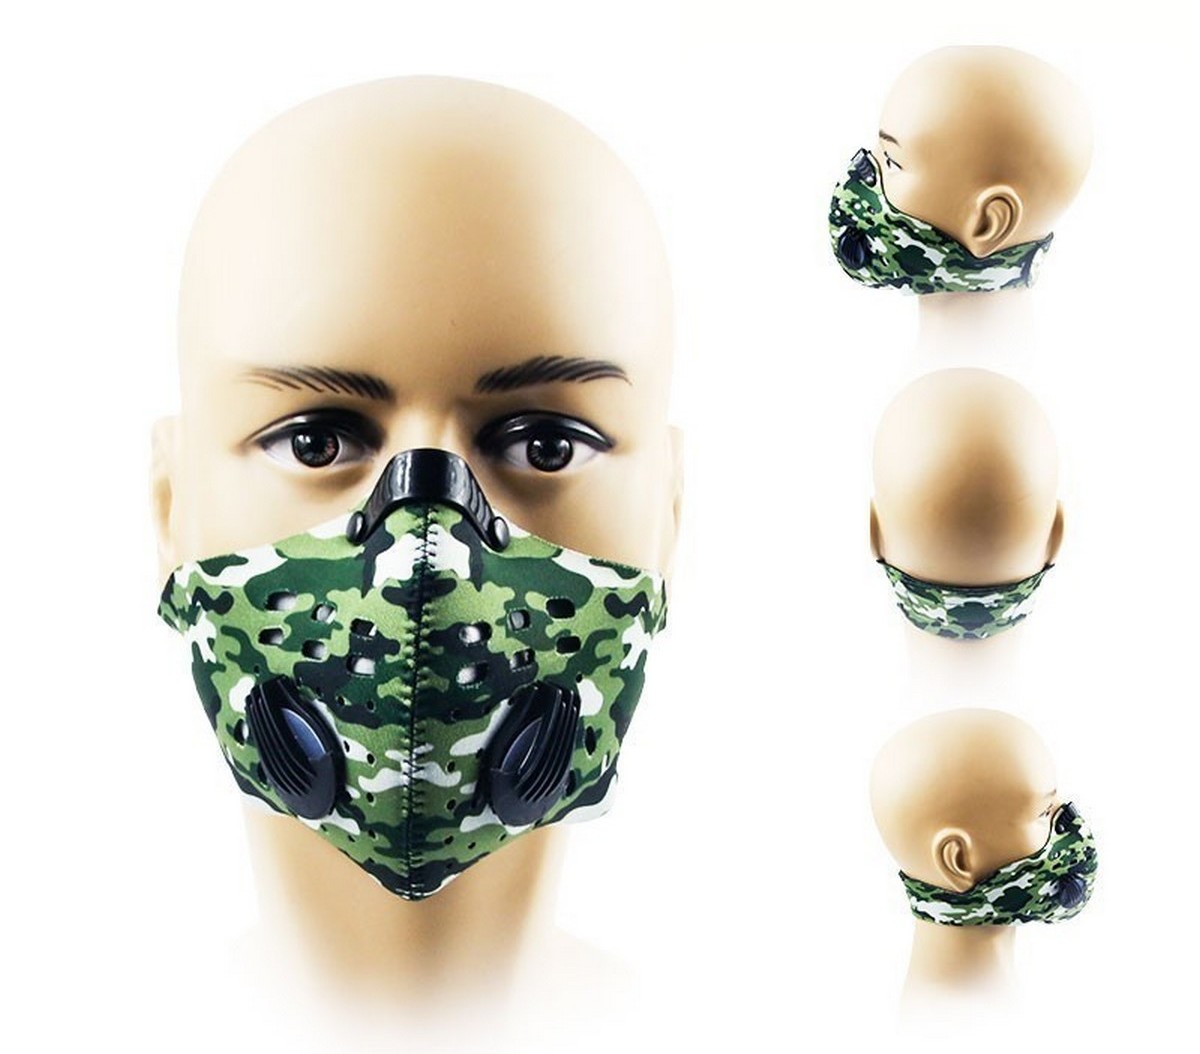 gasmasker gezichtsmasker